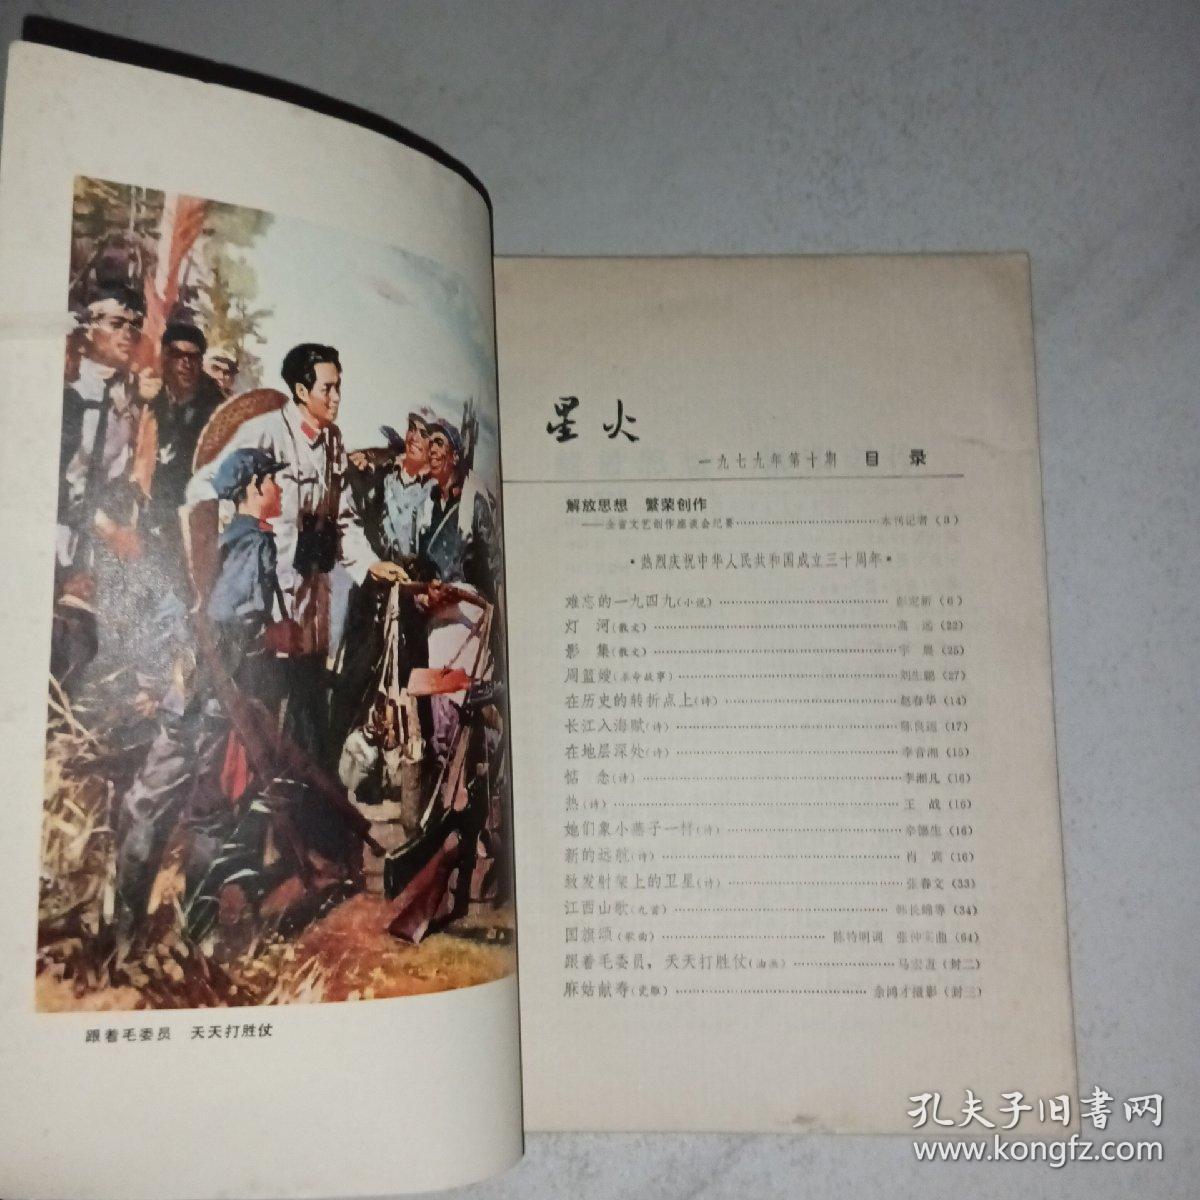 星火1979年第10期 封底瓷雕麻姑献寿